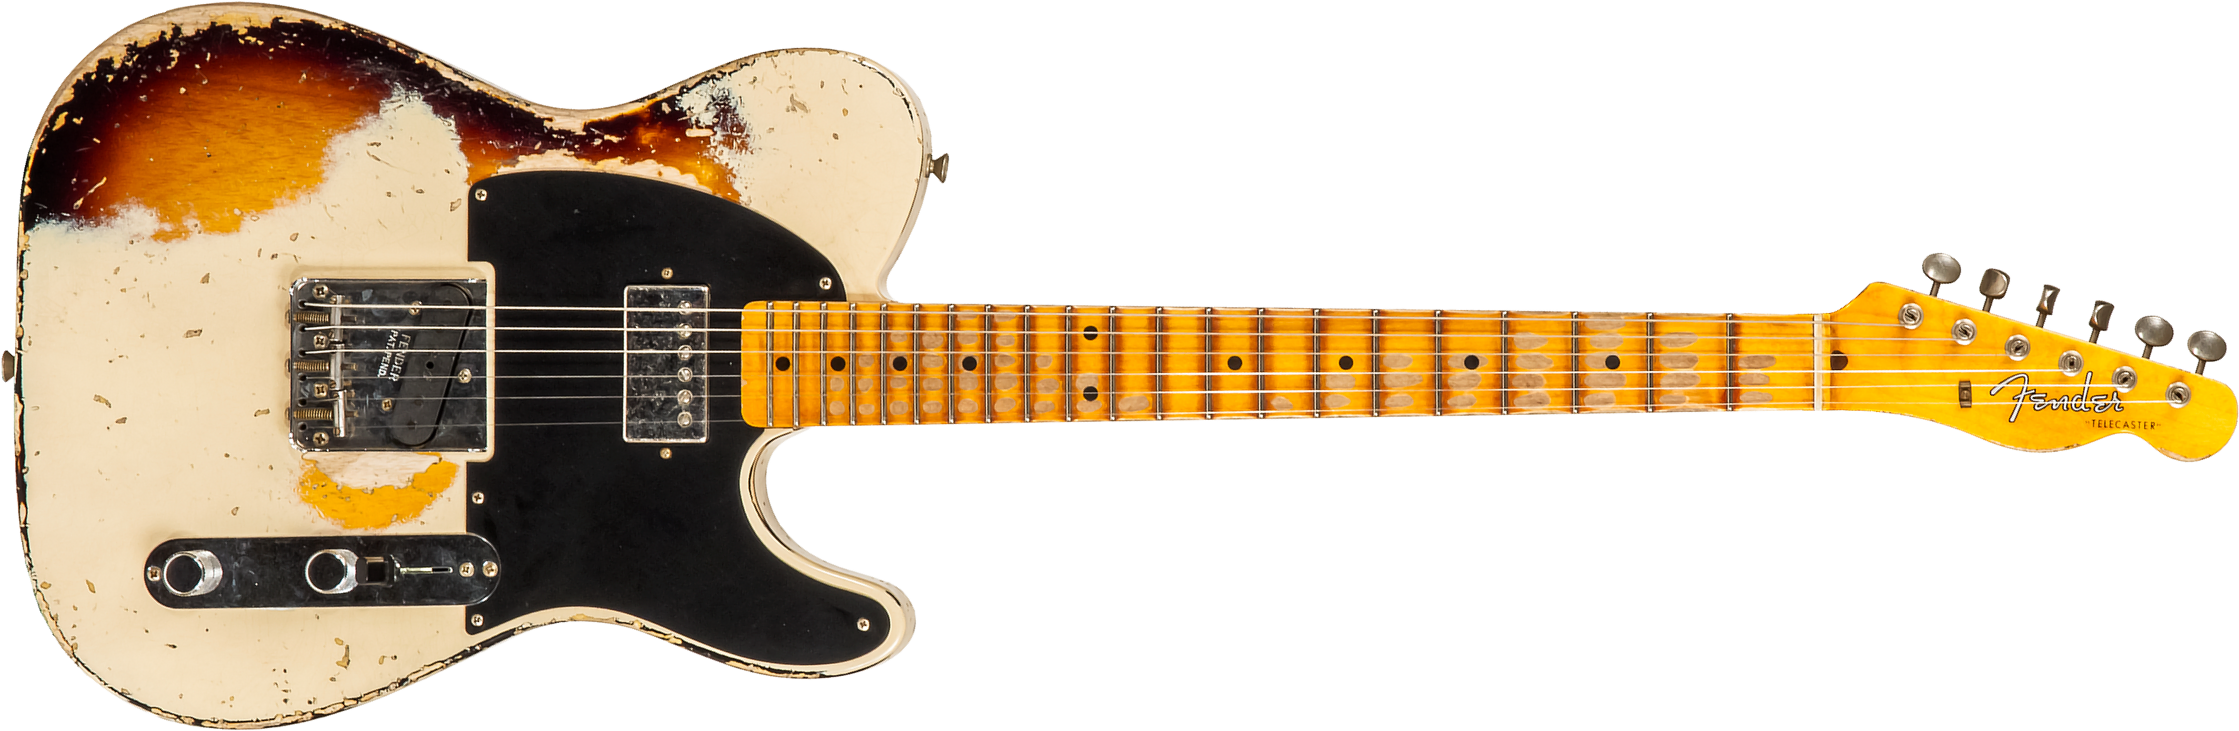 Fender Custom Shop Tele 1957 Sh Ht Mn #r117579 - Heavy Relic Desert Sand Ov. Sunburst - Televorm elektrische gitaar - Main picture